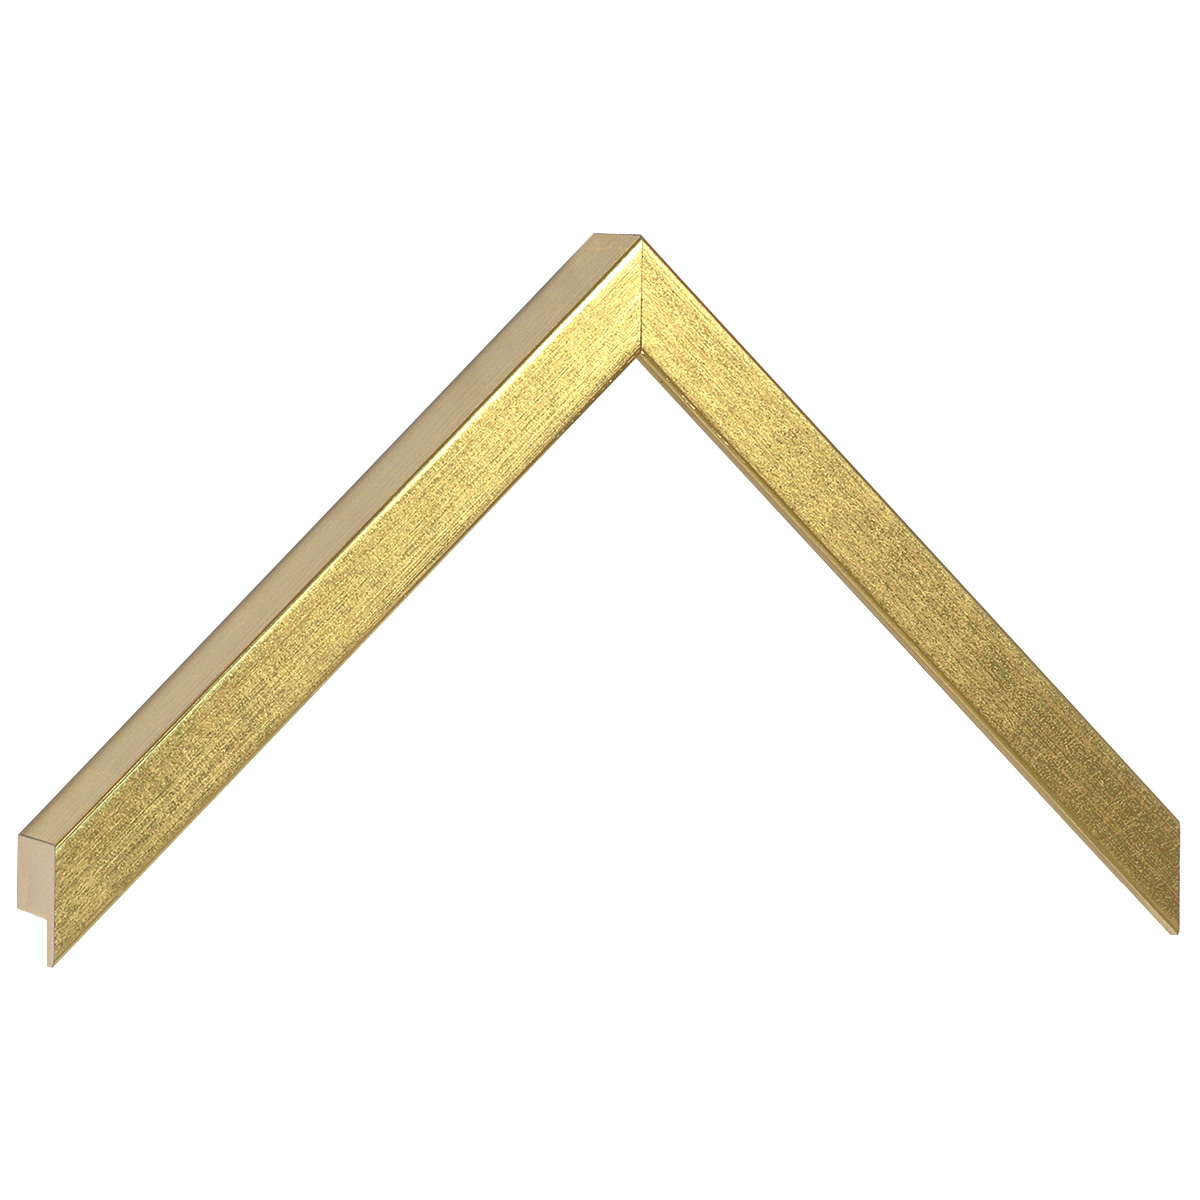 Profil ayous plat Lățime 15 Înățime 25 - auriu - Mostră